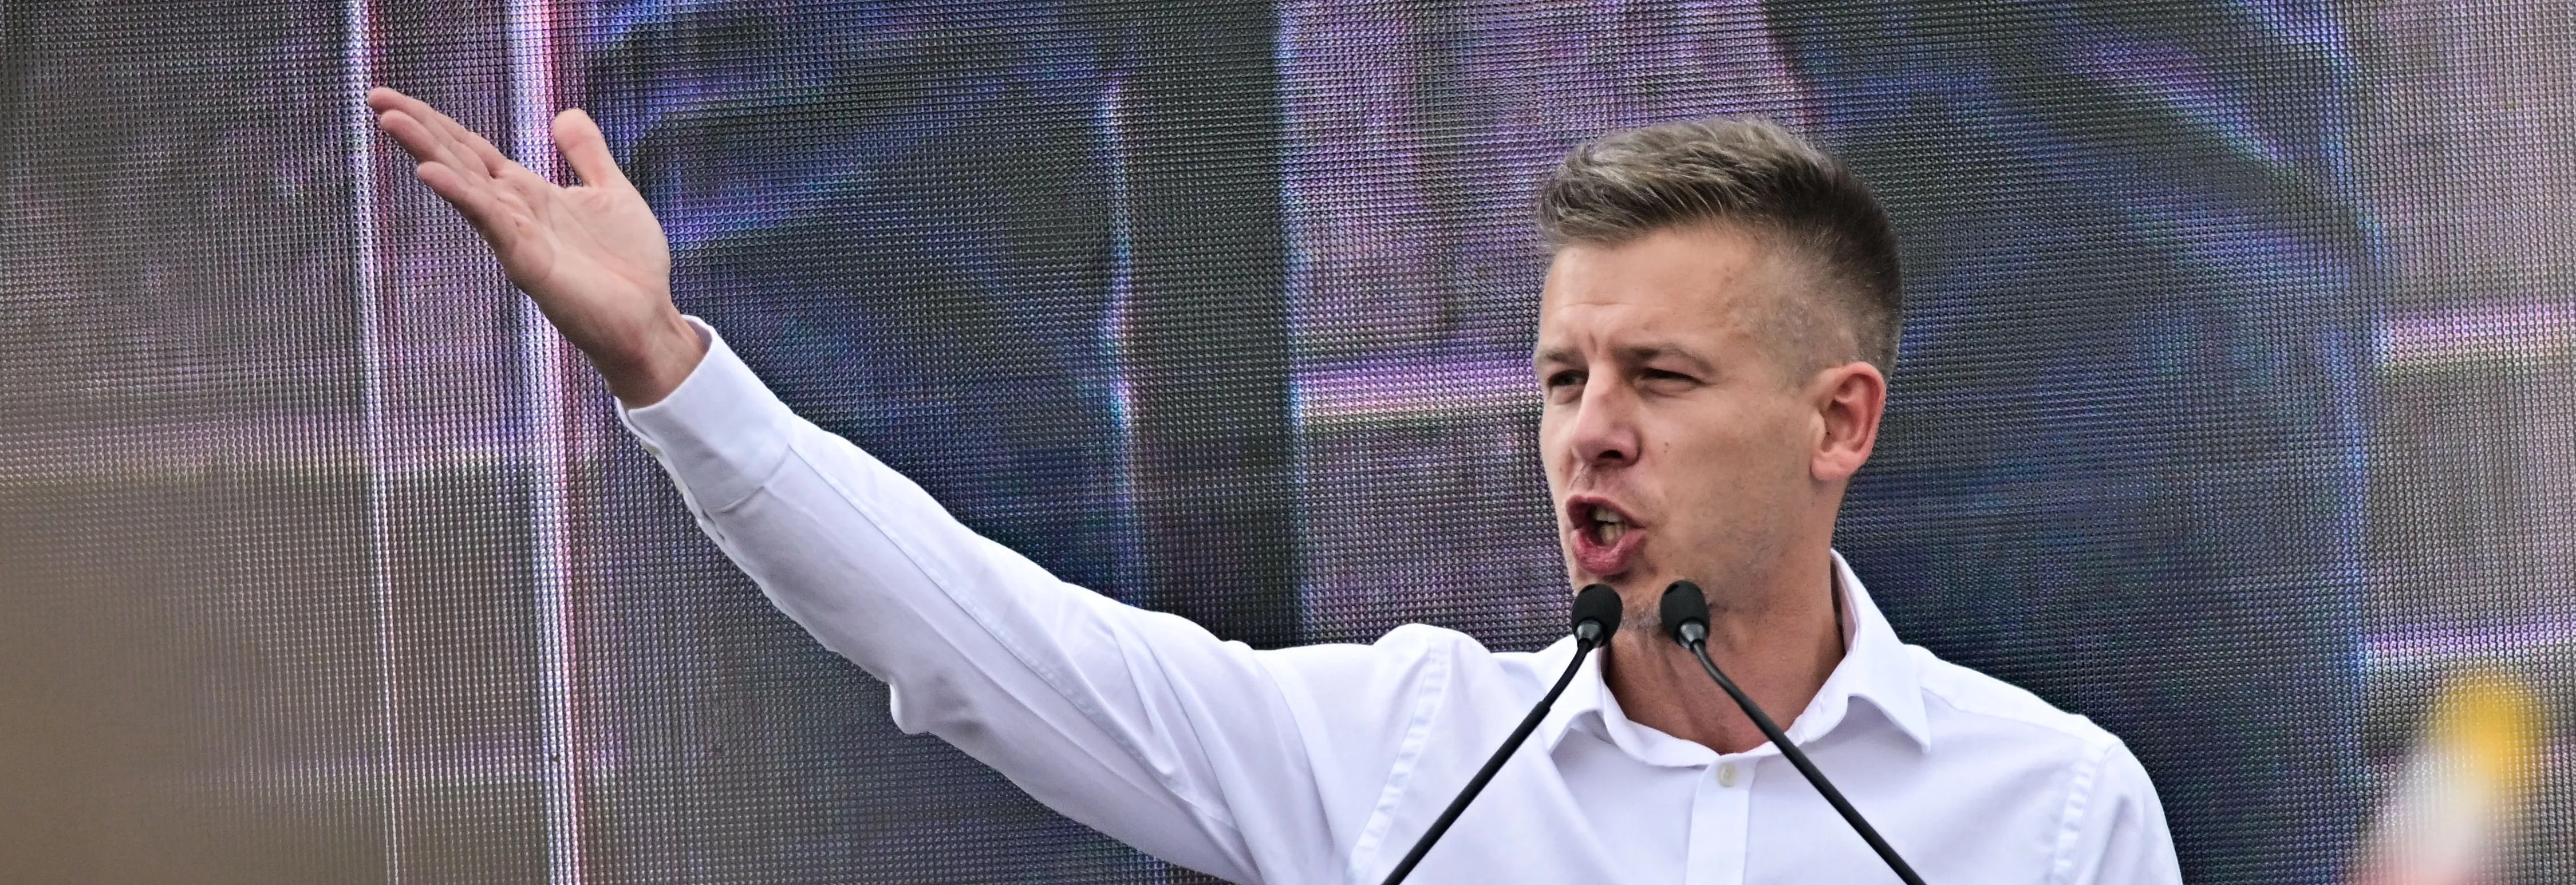 Z Orbánova spojence hlavním rivalem. Magyar strhnul davy, přízeň ale potřebuje udržet